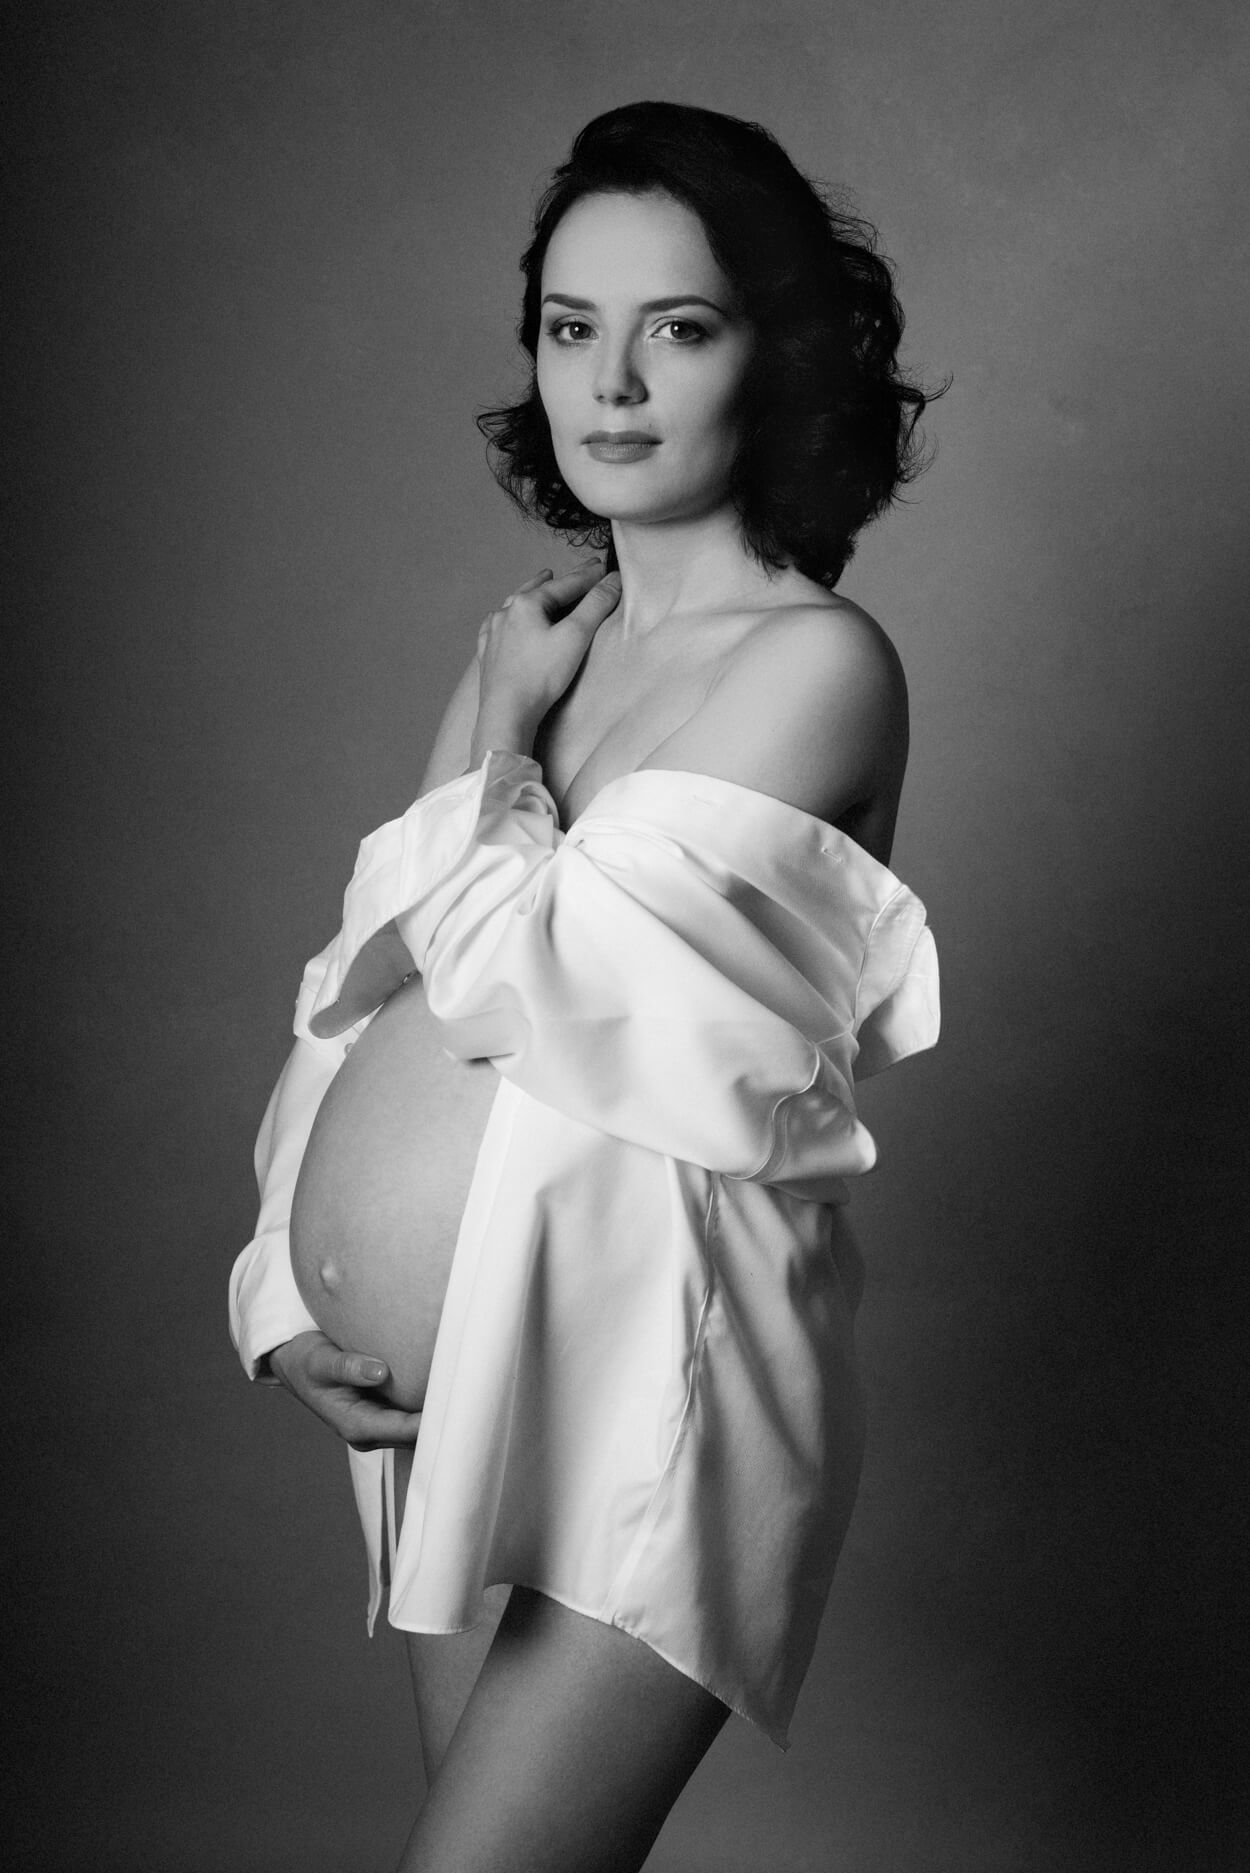 beautiful maternity portrait